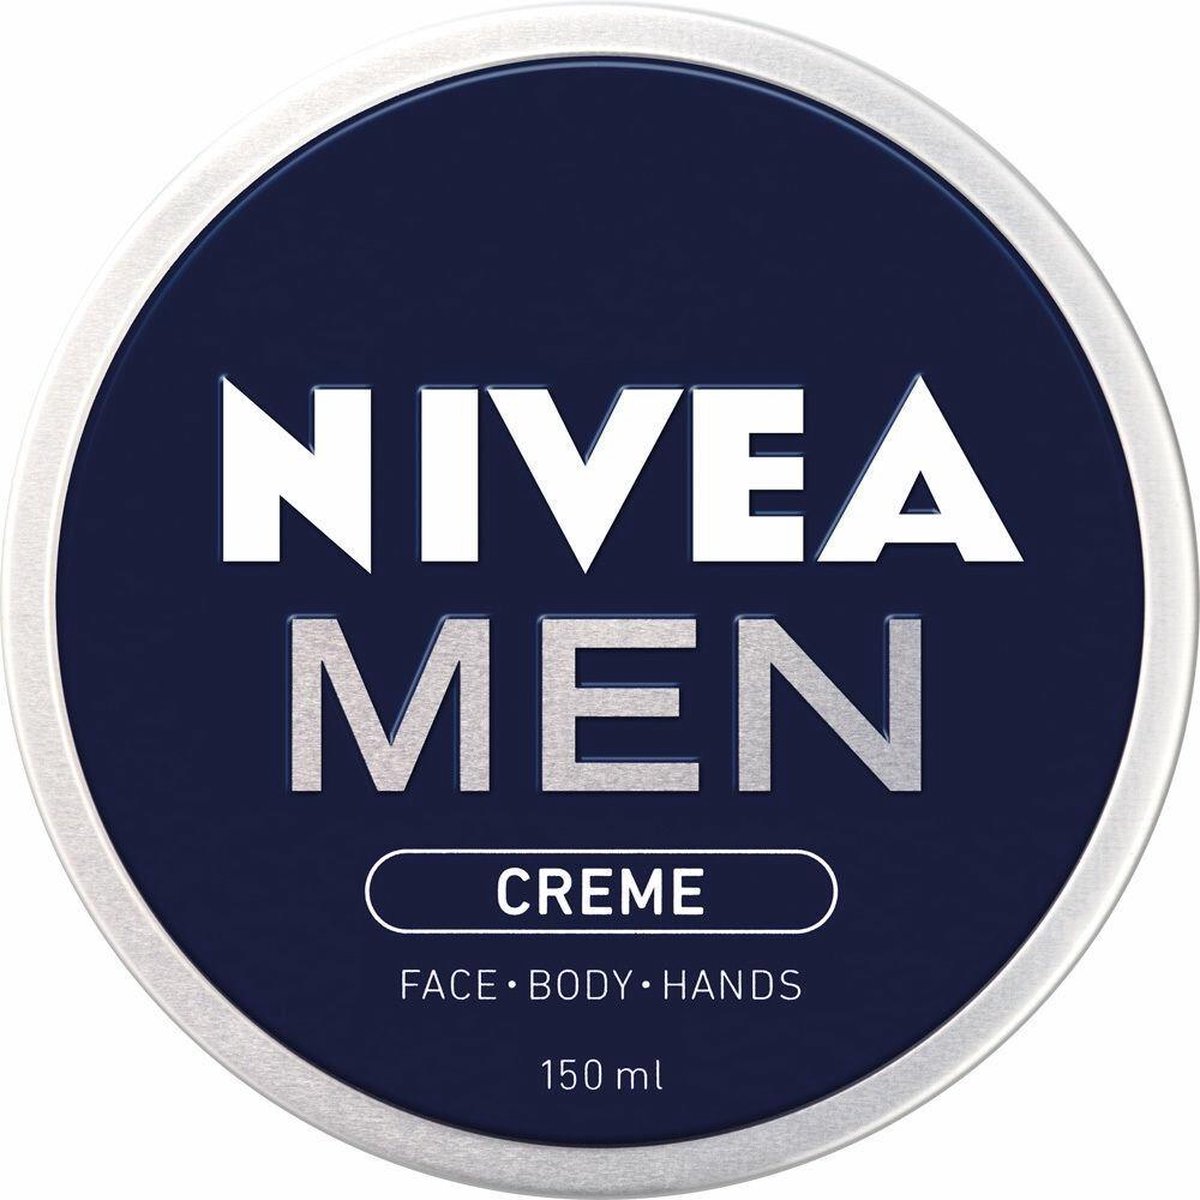 artikel Brandewijn browser NIVEA MEN Crème - 150 ml - Bodycrème | bol.com